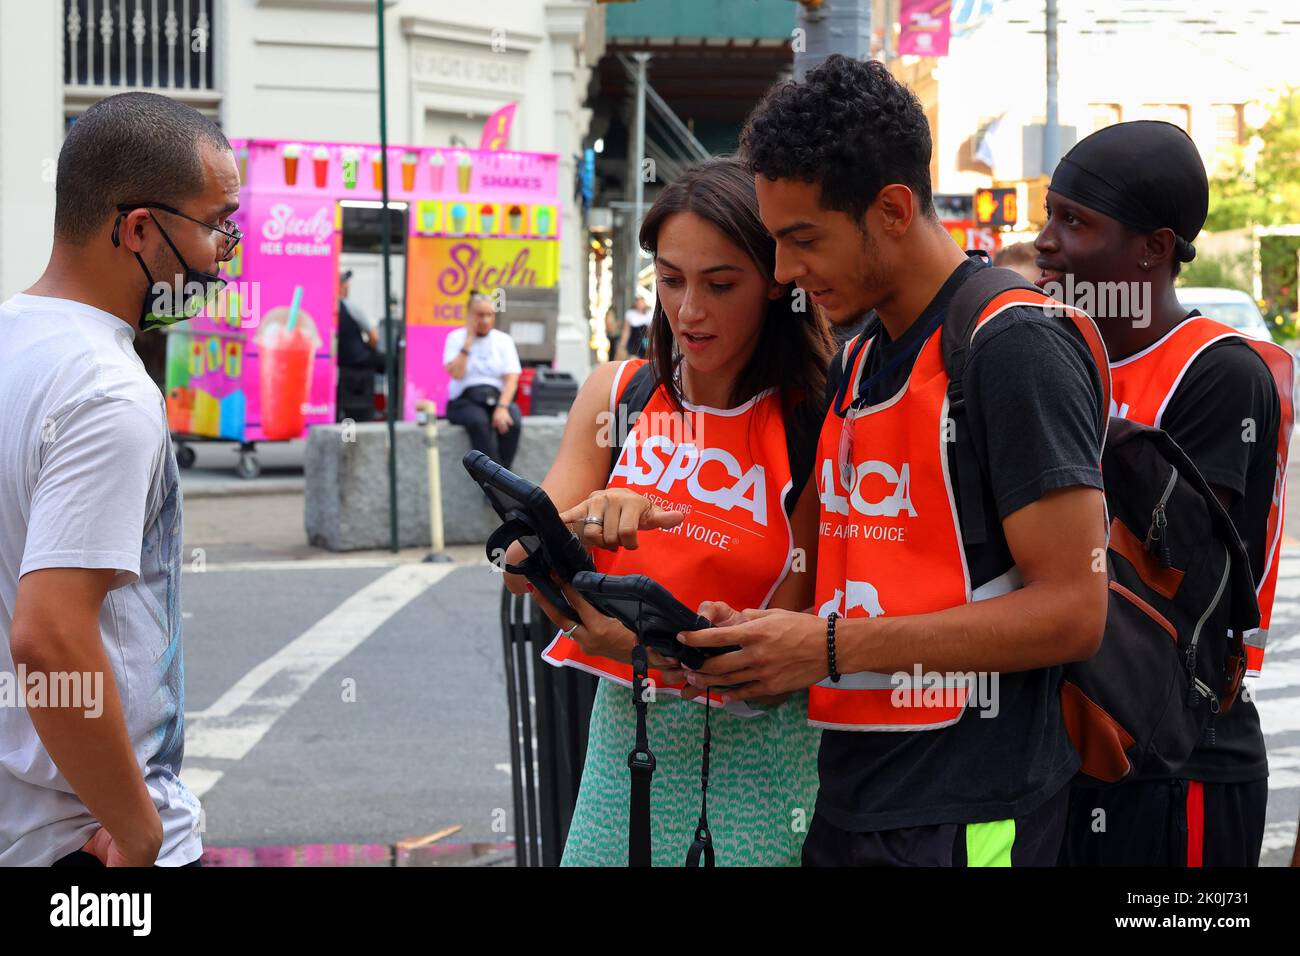 Straßenkandidaten, Anwälte in New York, die für die gemeinnützige Organisation ASPCA werben, um Informationen und Spenden von Menschen auf dem Bürgersteig einzuholen Stockfoto